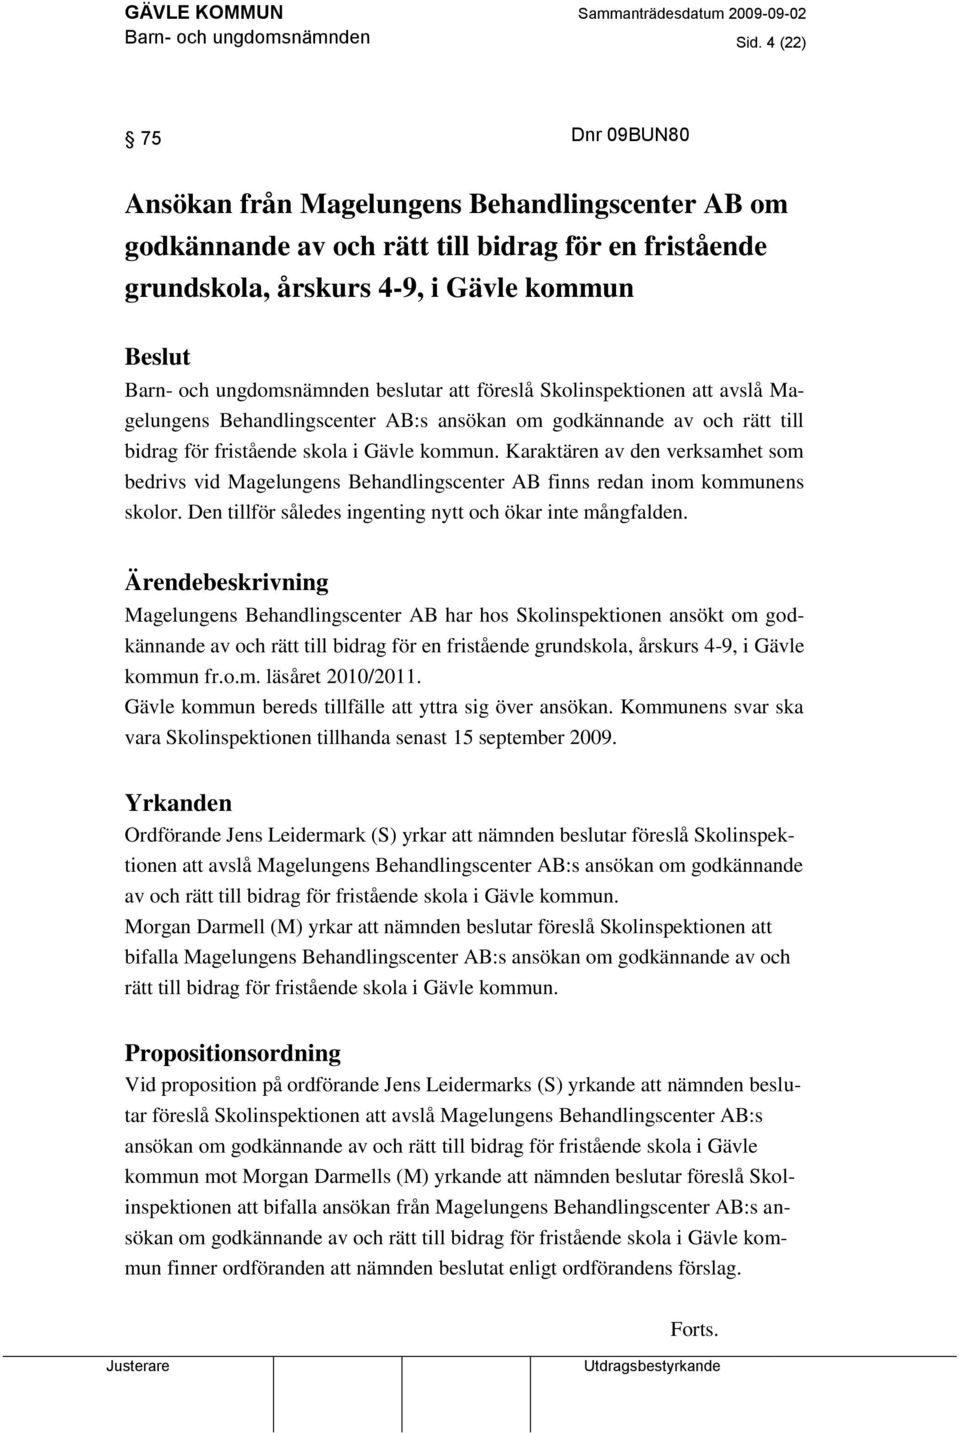 beslutar att föreslå Skolinspektionen att avslå Magelungens Behandlingscenter AB:s ansökan om godkännande av och rätt till bidrag för fristående skola i Gävle kommun.